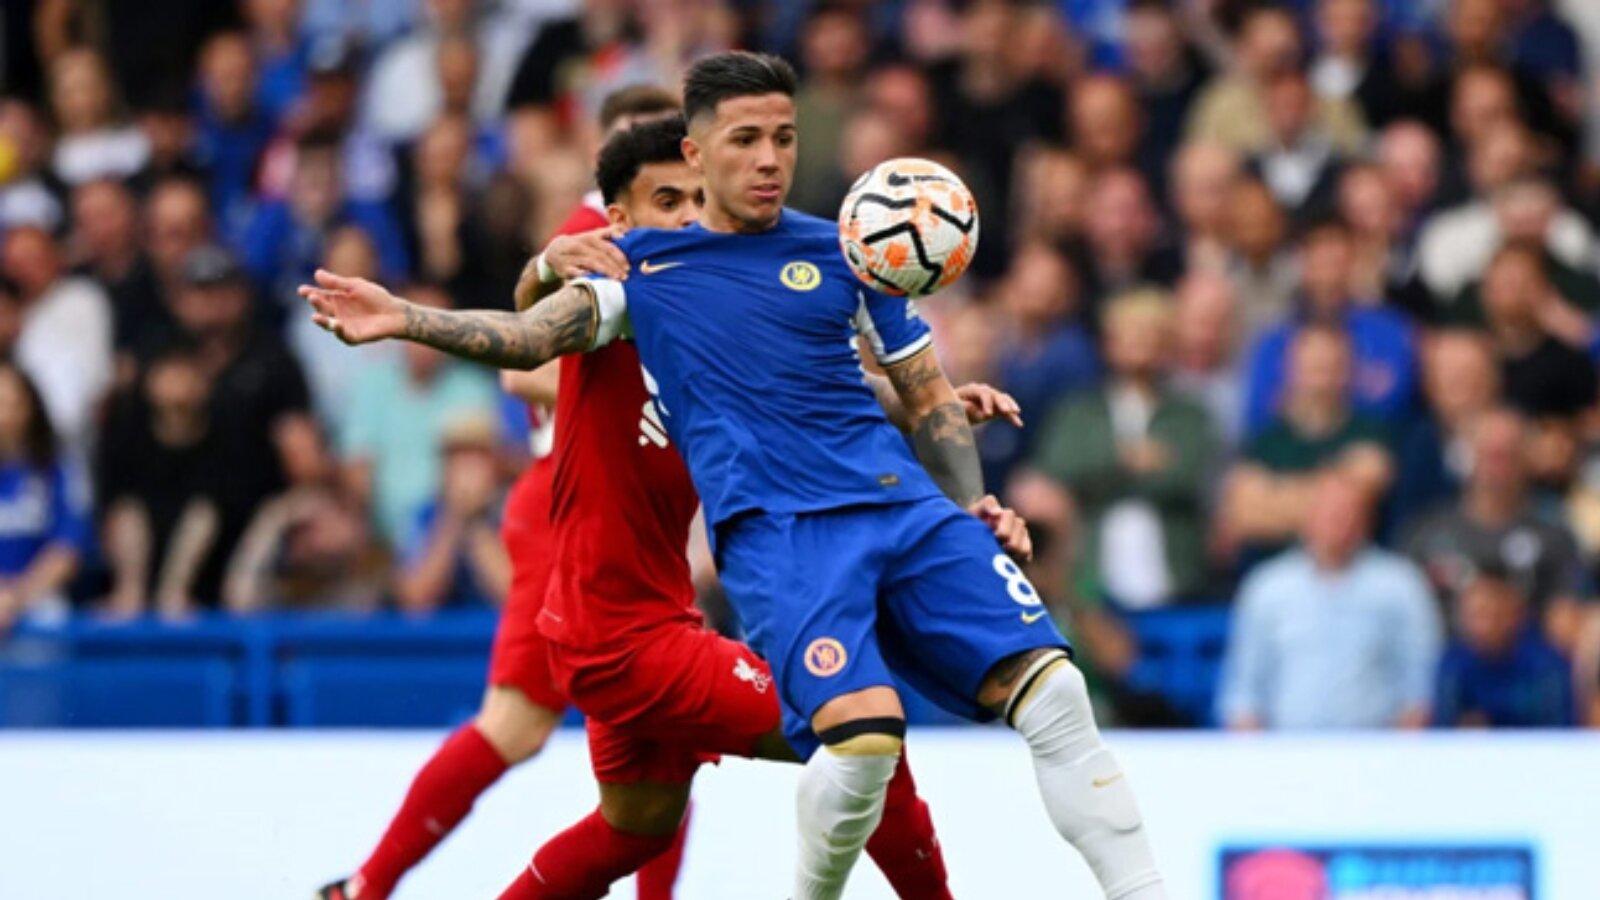 Enzo làm chủ tuyến giữa trong trận hòa giữa Liverpool và Chelsea (nguồn ảnh: Internet)